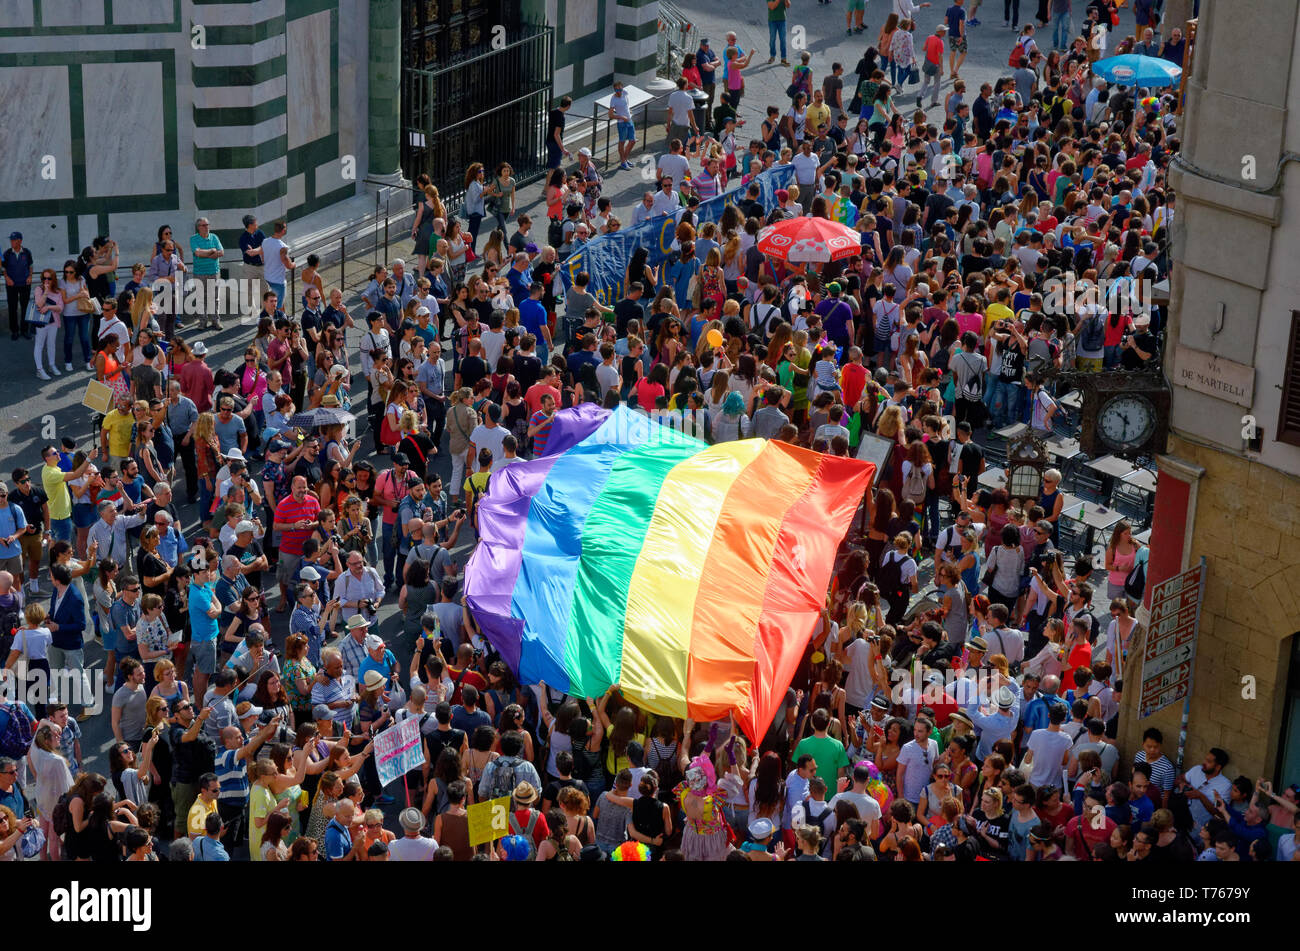 Une vue sur un gay pride 2016 mars entrant dans la Piazza del Duomo de Florence (Firenze), l'Italie, avec un grand drapeau arc-en-ciel porté par le corwd Banque D'Images